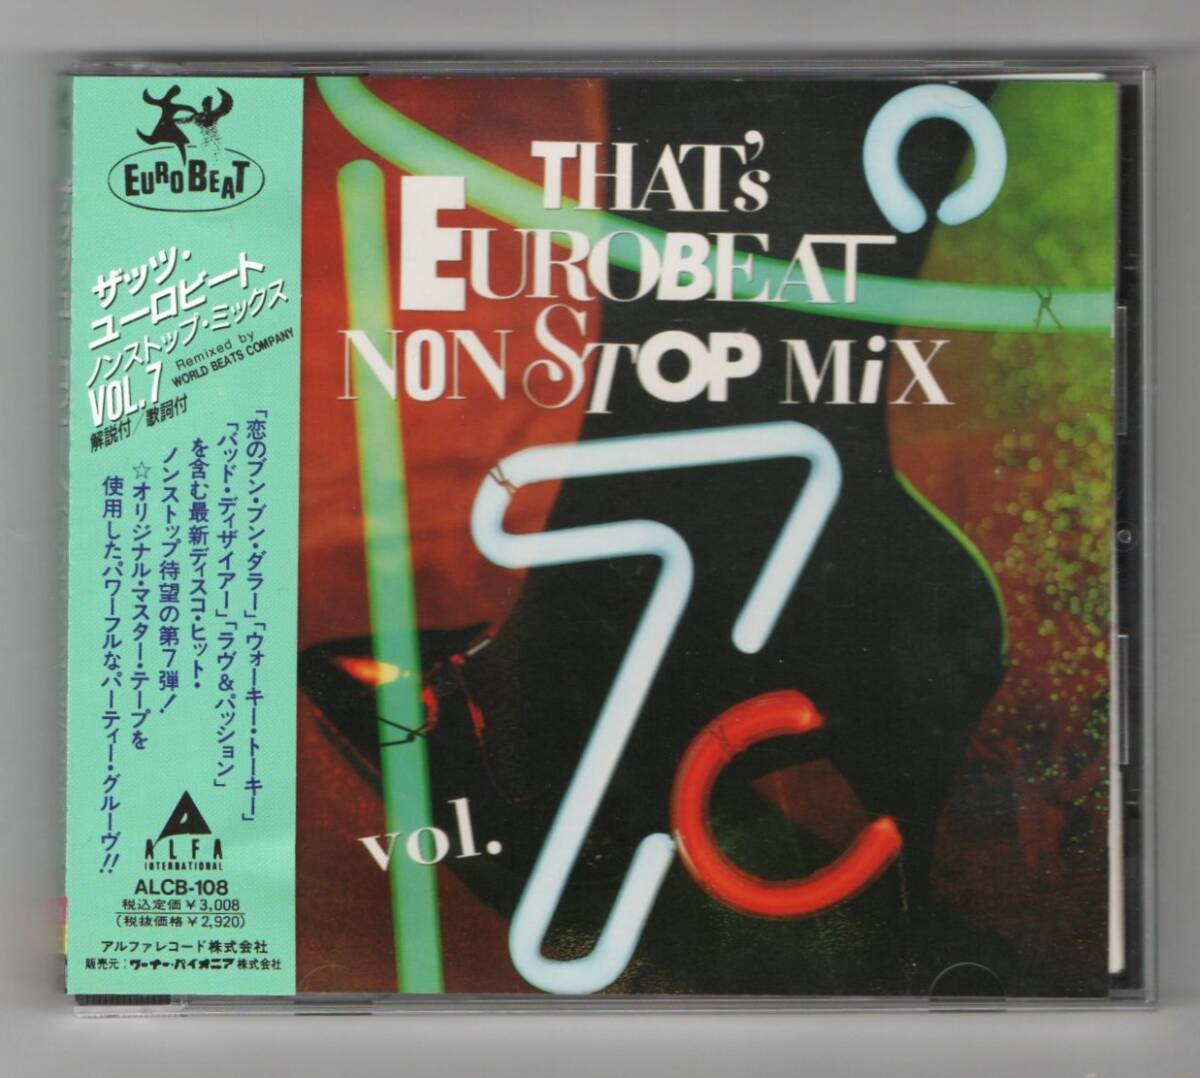 Σ 美品 12曲入 帯付 ザッツ ユーロビート ノンストップ ミックス CD/THAT'S EUROBEAT NON STOP MIX vol.7/ハイエナジー HI-NRG/F.C.F 他_※プラケースは交換済みです。